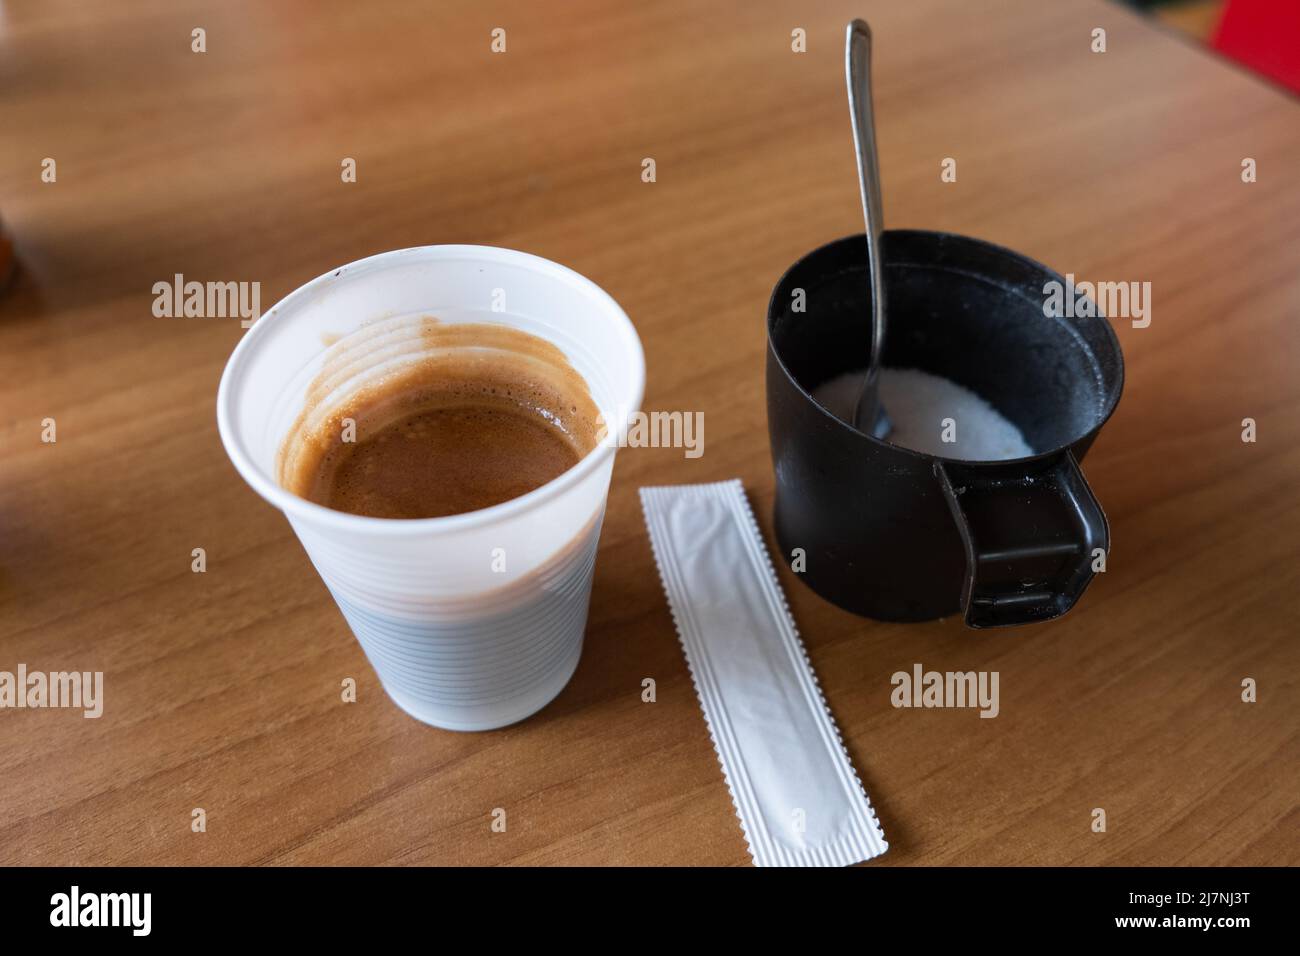 Semplice caffè normale in tazza di plastica servito con zucchero bianco. Caffè espresso italiano o caffè normale. Foto Stock